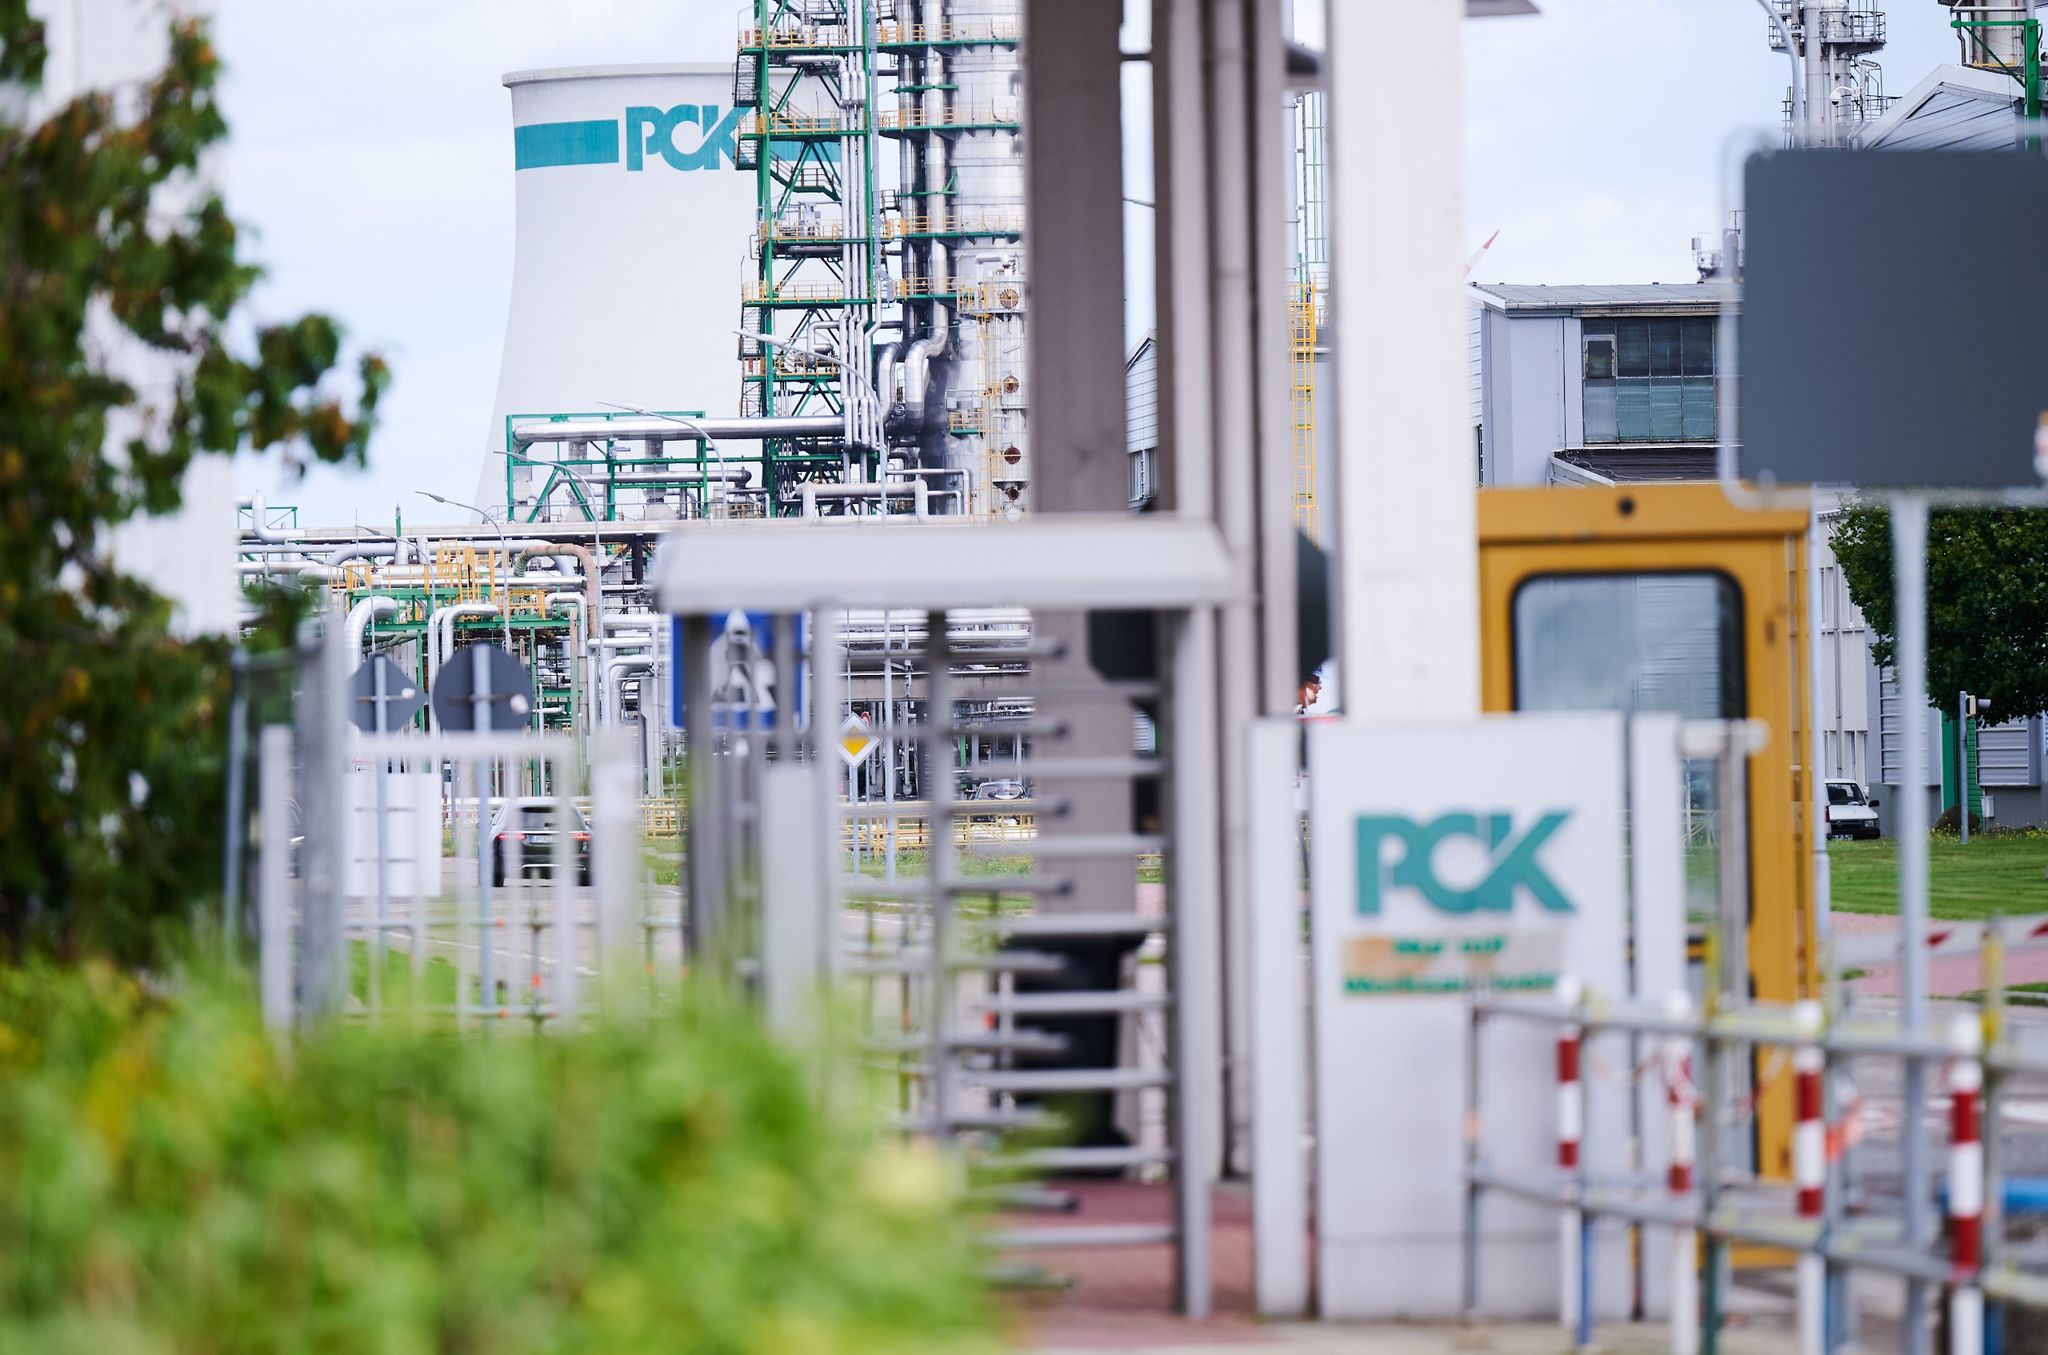 Zur Sicherung des Betriebs der PCK-Raffinerie im brandenburgischen Schwedt setzt die Bundesregierung auf eine Treuhandlösung.